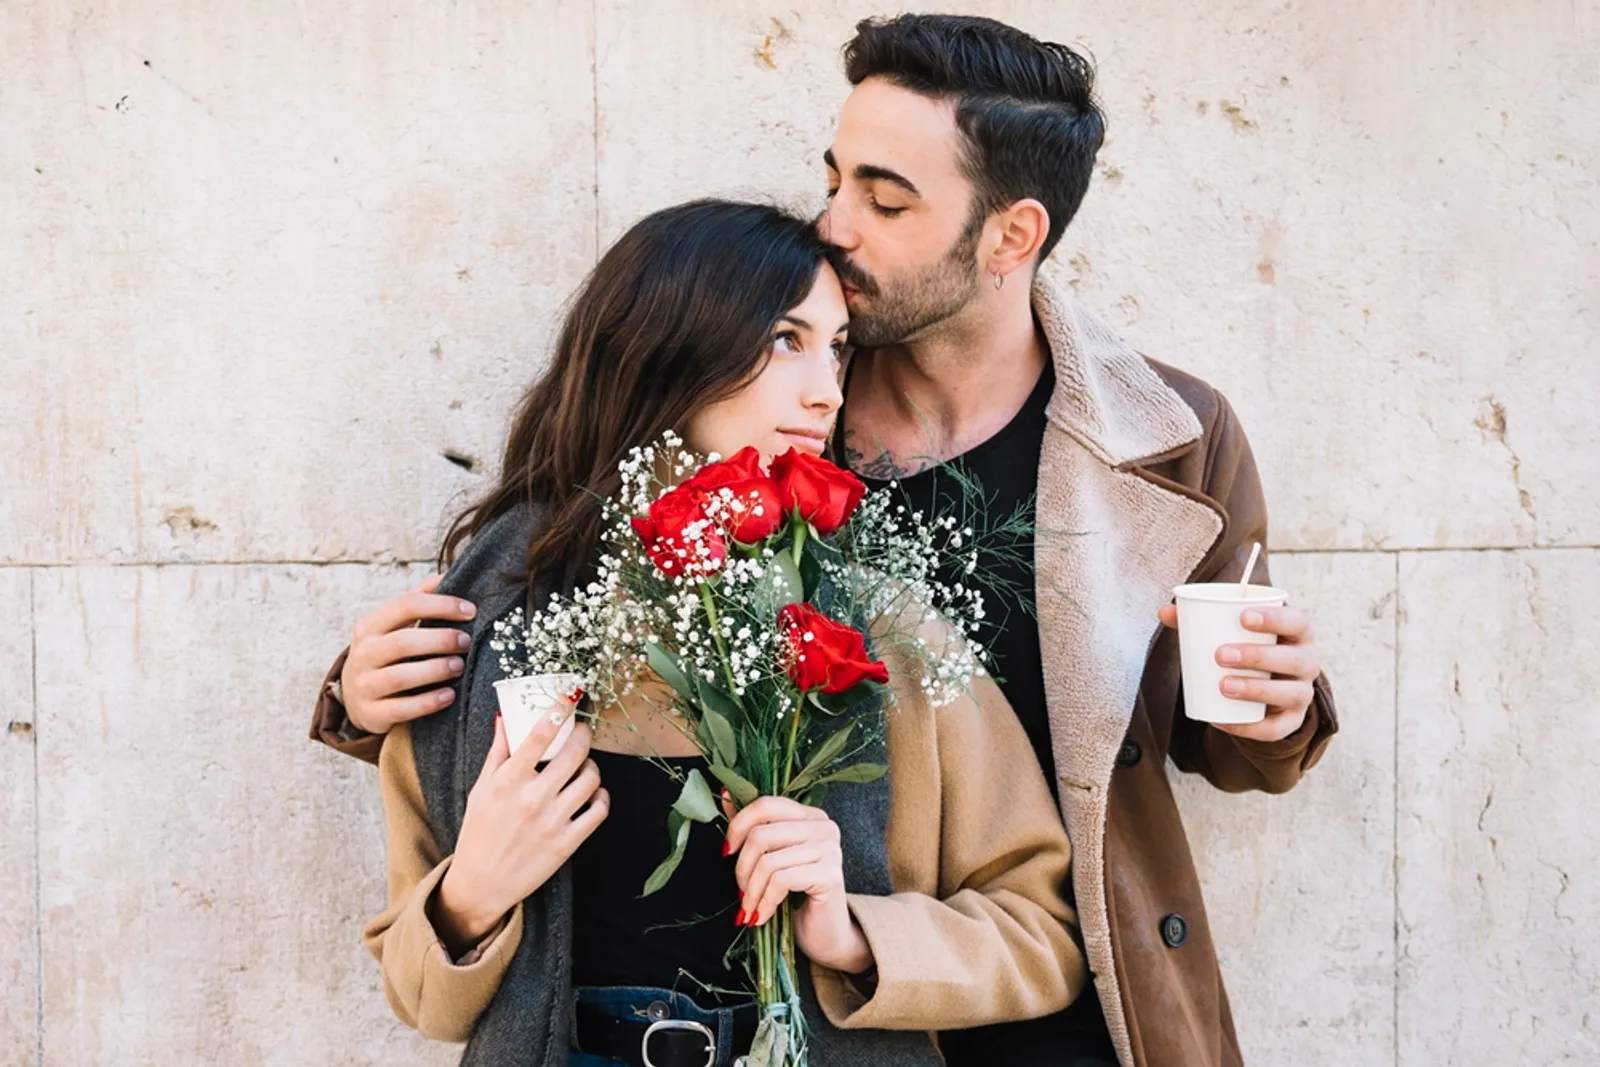 50 Kata-Kata Romantis Singkat untuk Pasangan yang Menyentuh